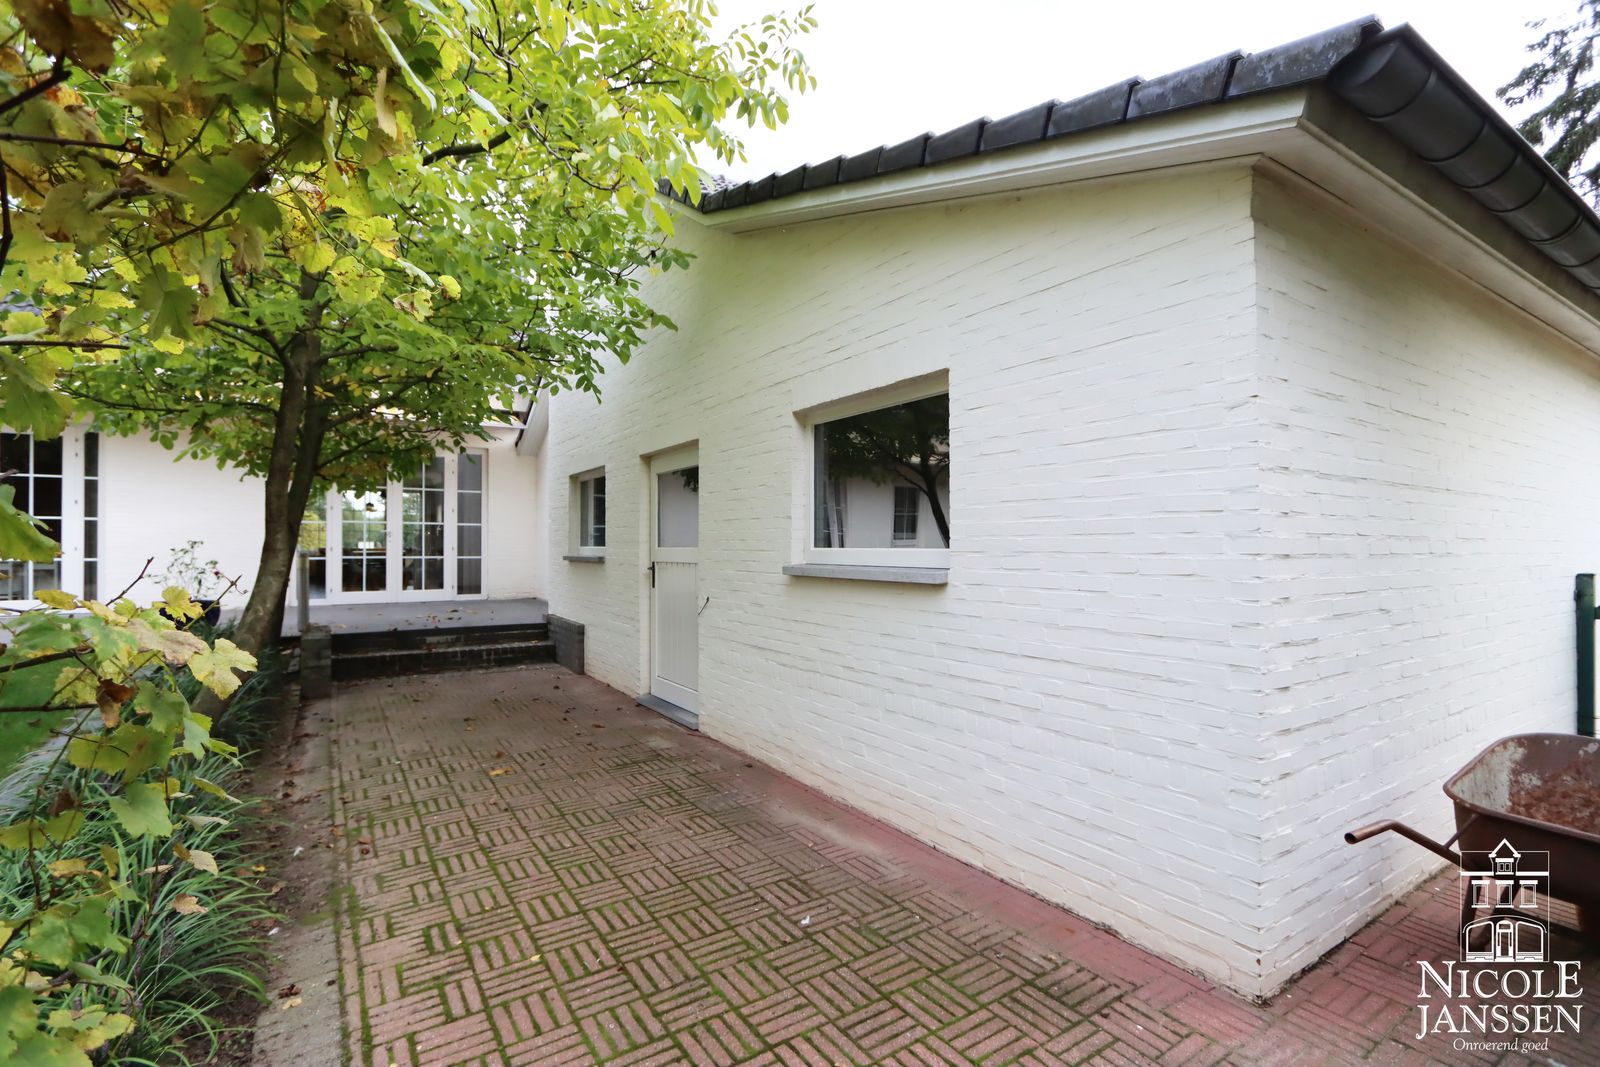 27 Nicole Janssen - huis te koop - Weertersteenweg 515 te Molenbeersel - garage.jpg